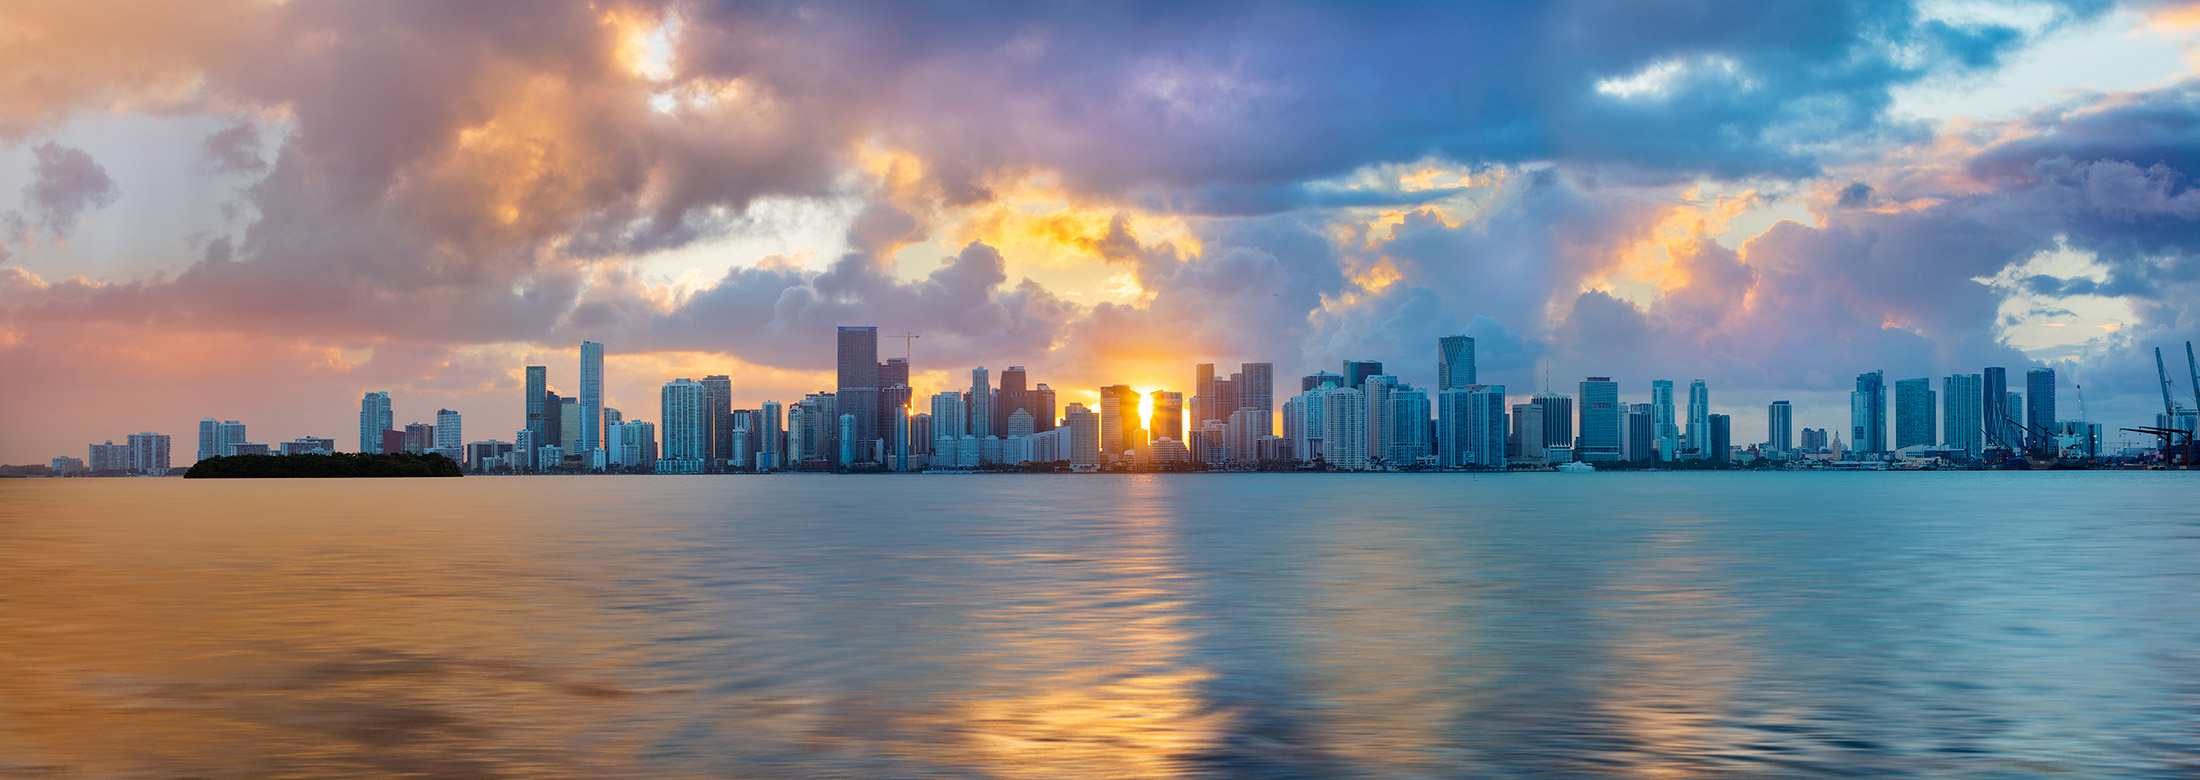 Miami Cityscape Pastel Sunset